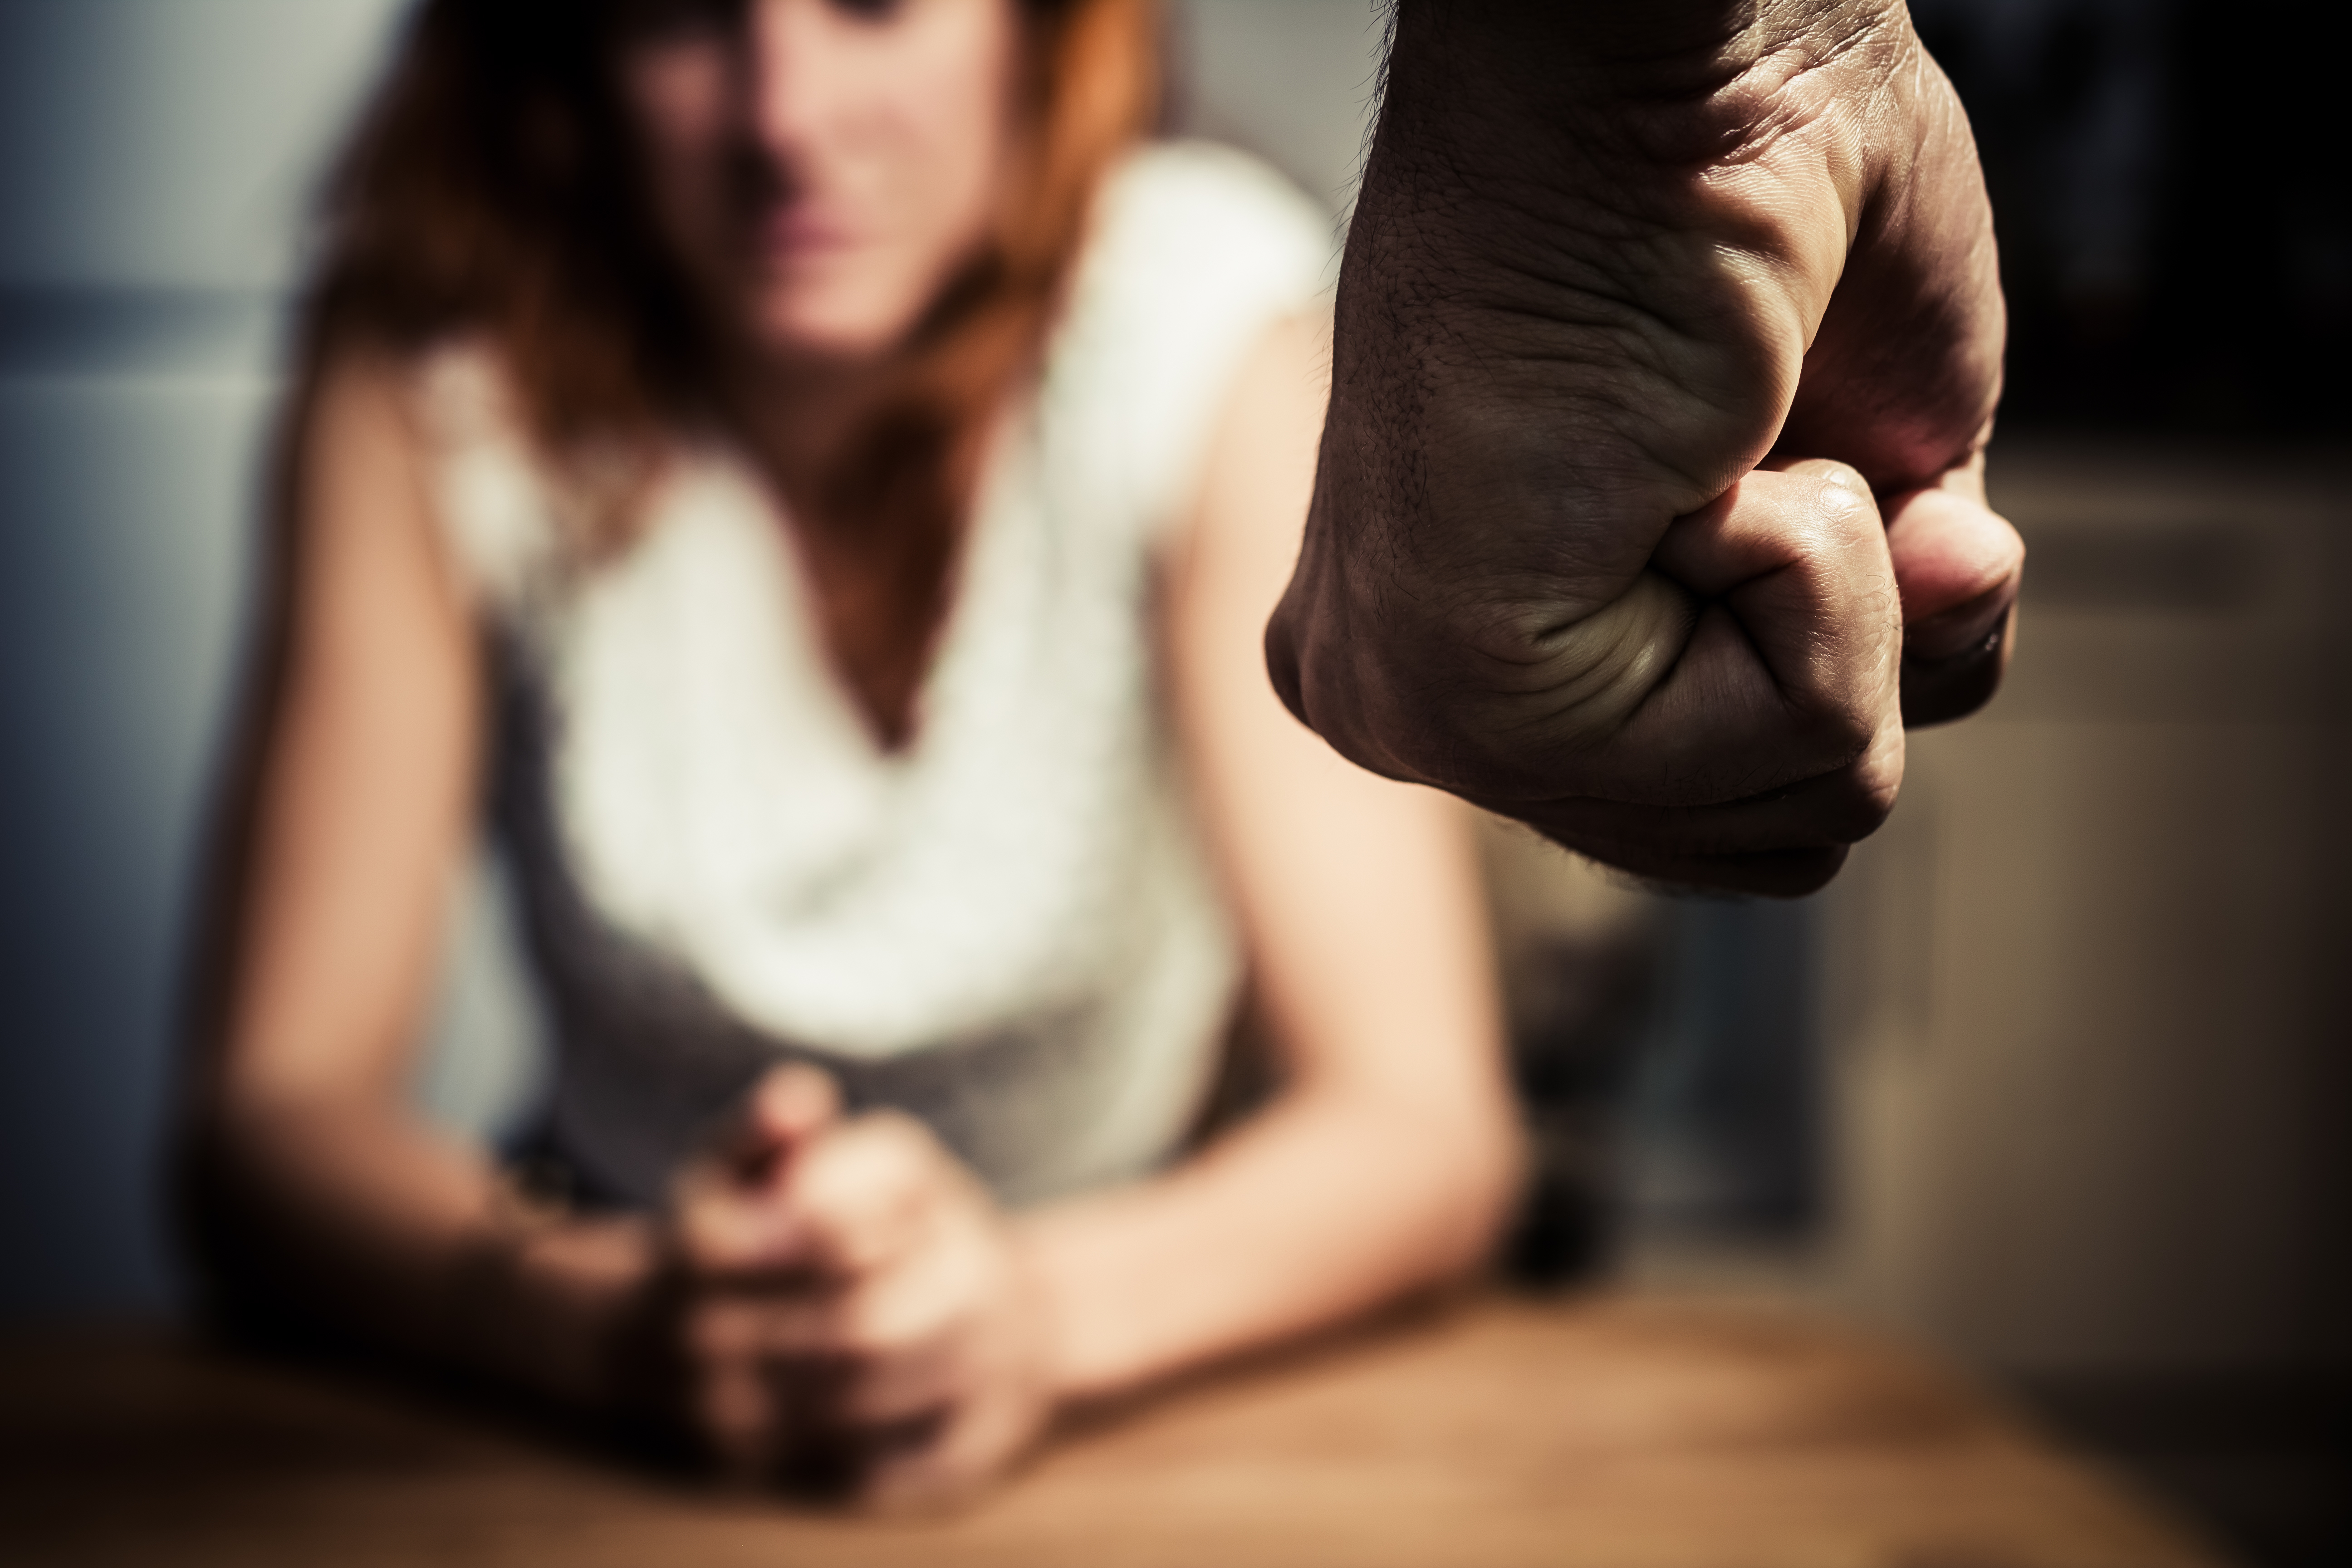 İlişkide şiddet ve baskılama: Birlikte olduğunuz kişinin size şiddet uyguladığının 10 sinyali